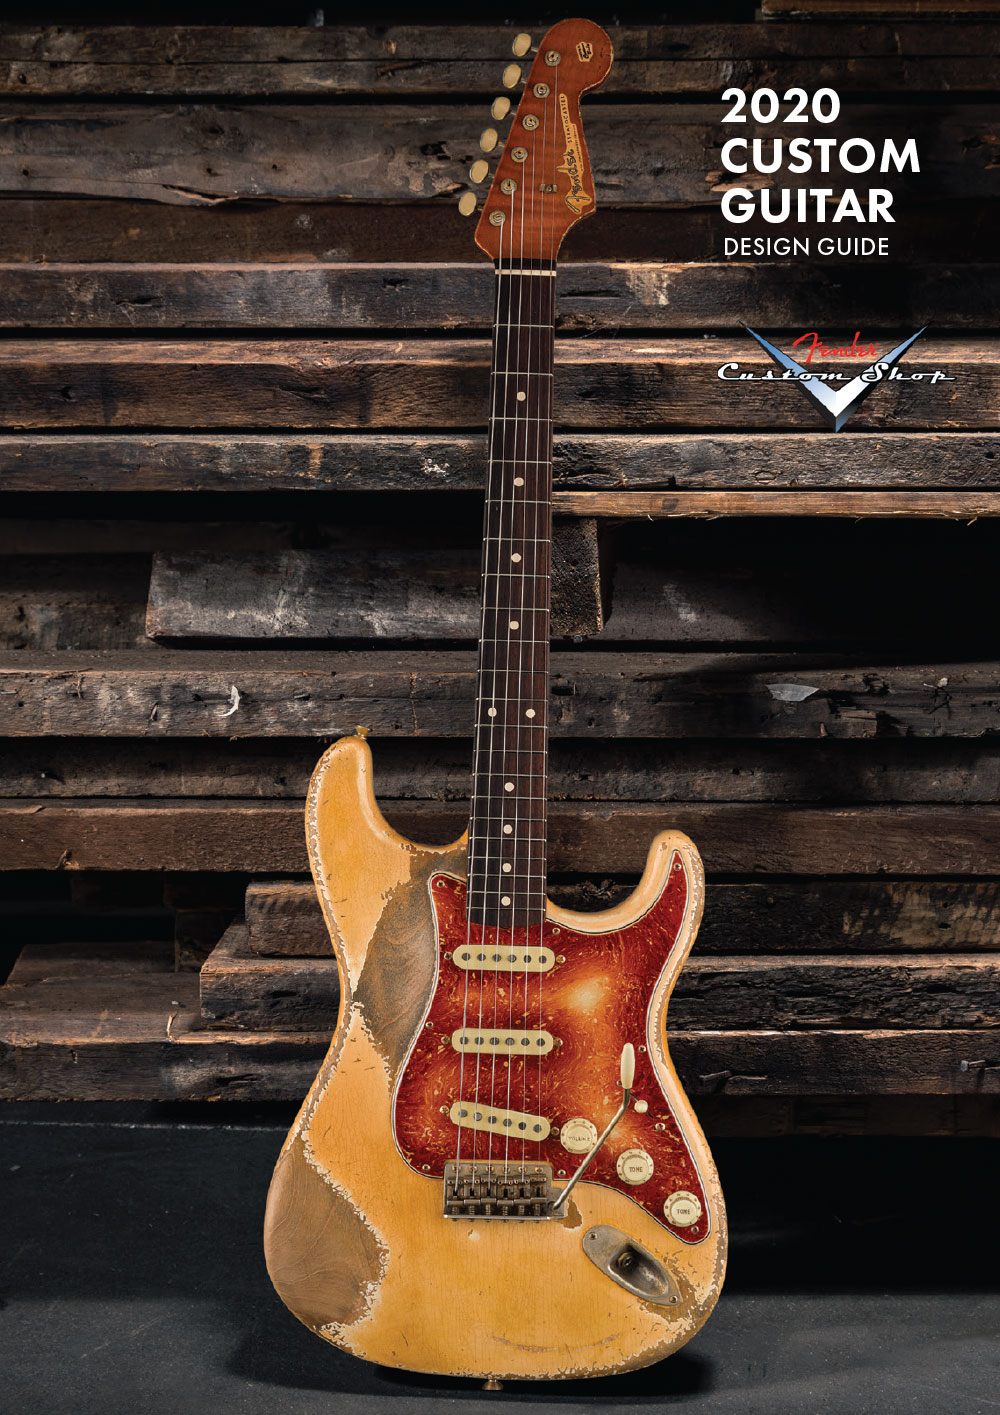 Fender Custom Design Guide 2020